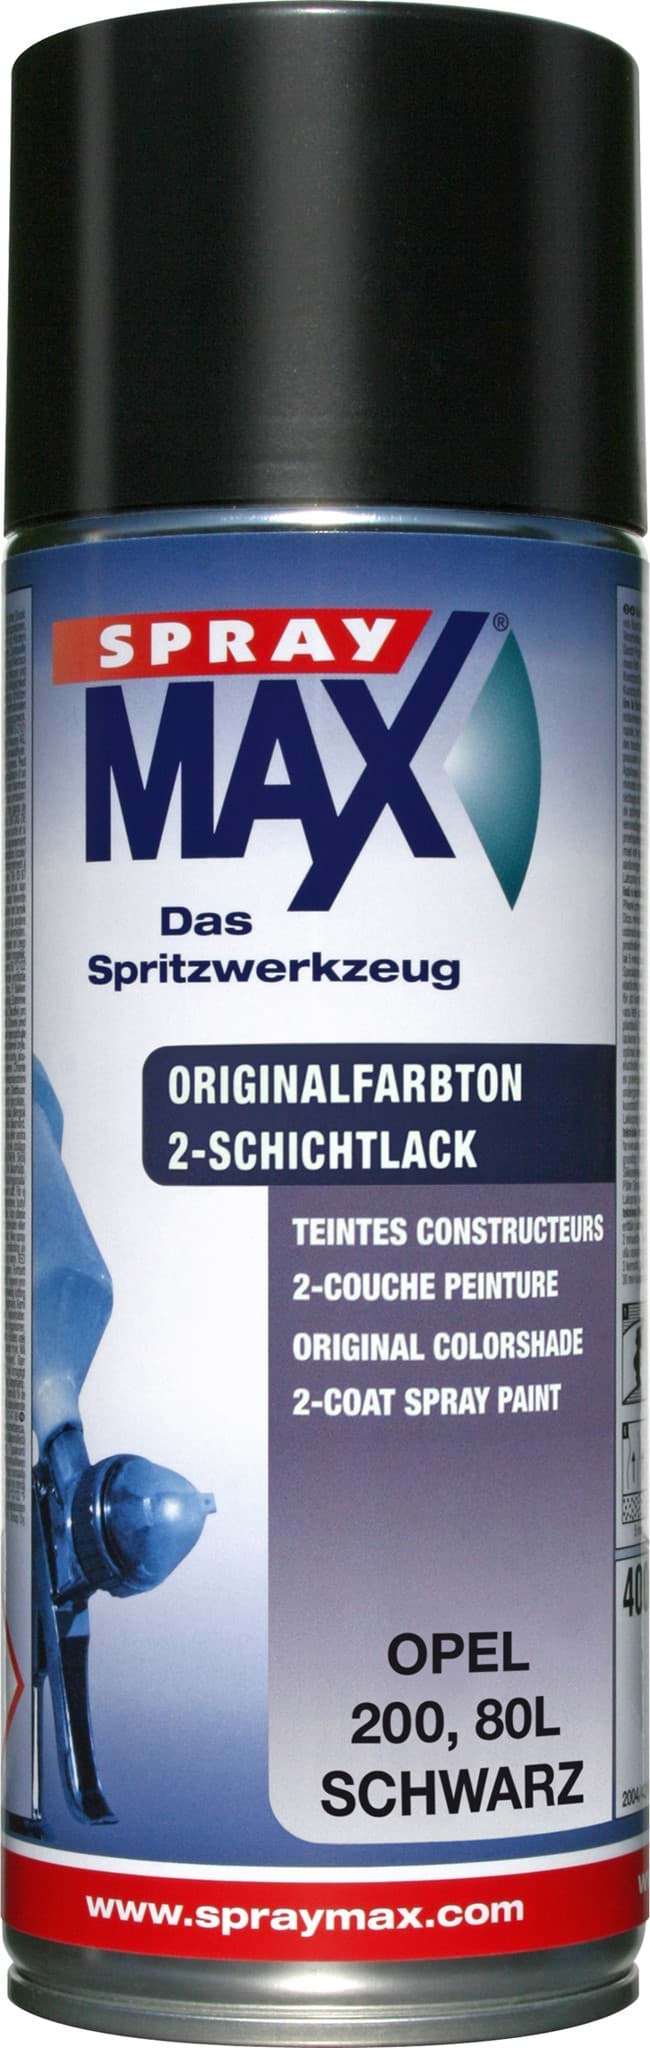 Afbeelding van SprayMax Originalfarbton für Opel 200 schwarz